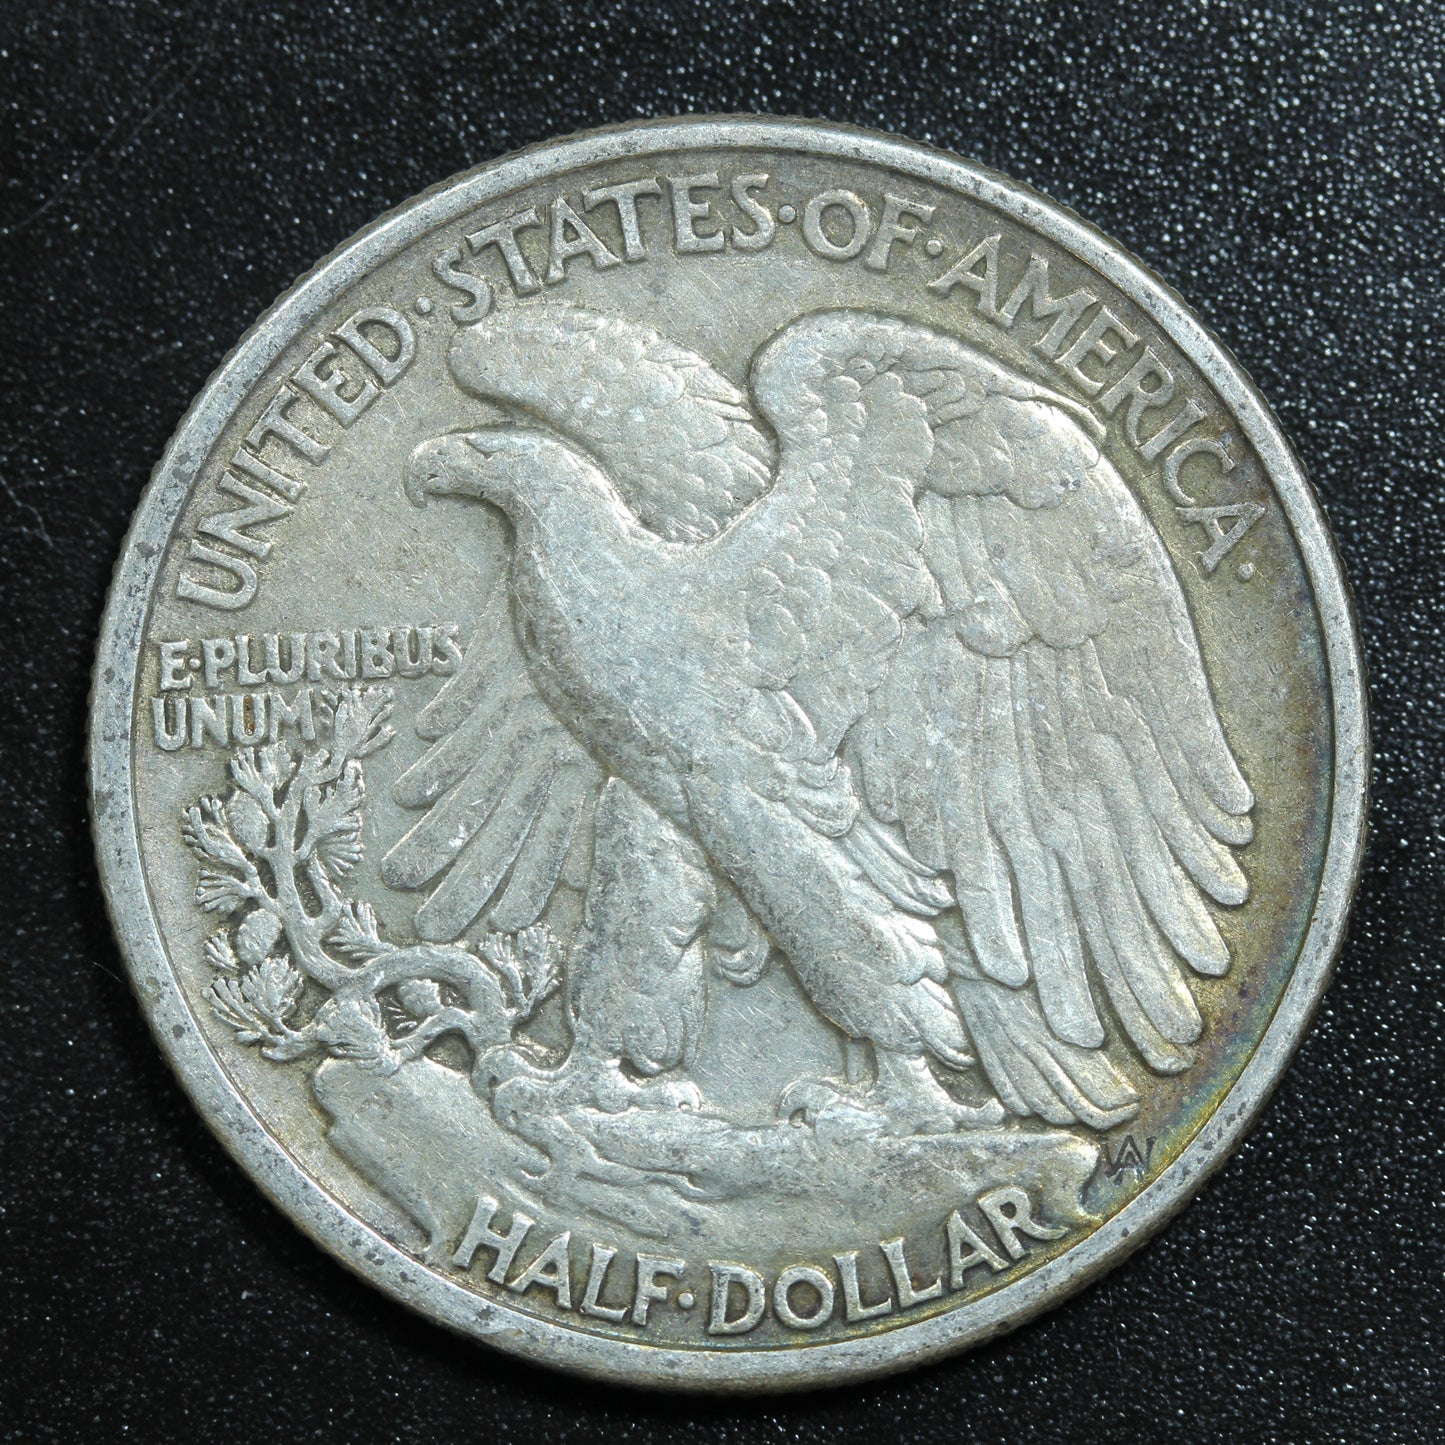 1938 (Philadelphia) Walking Liberty Silver Half Dollar 50c Rainbow Toning